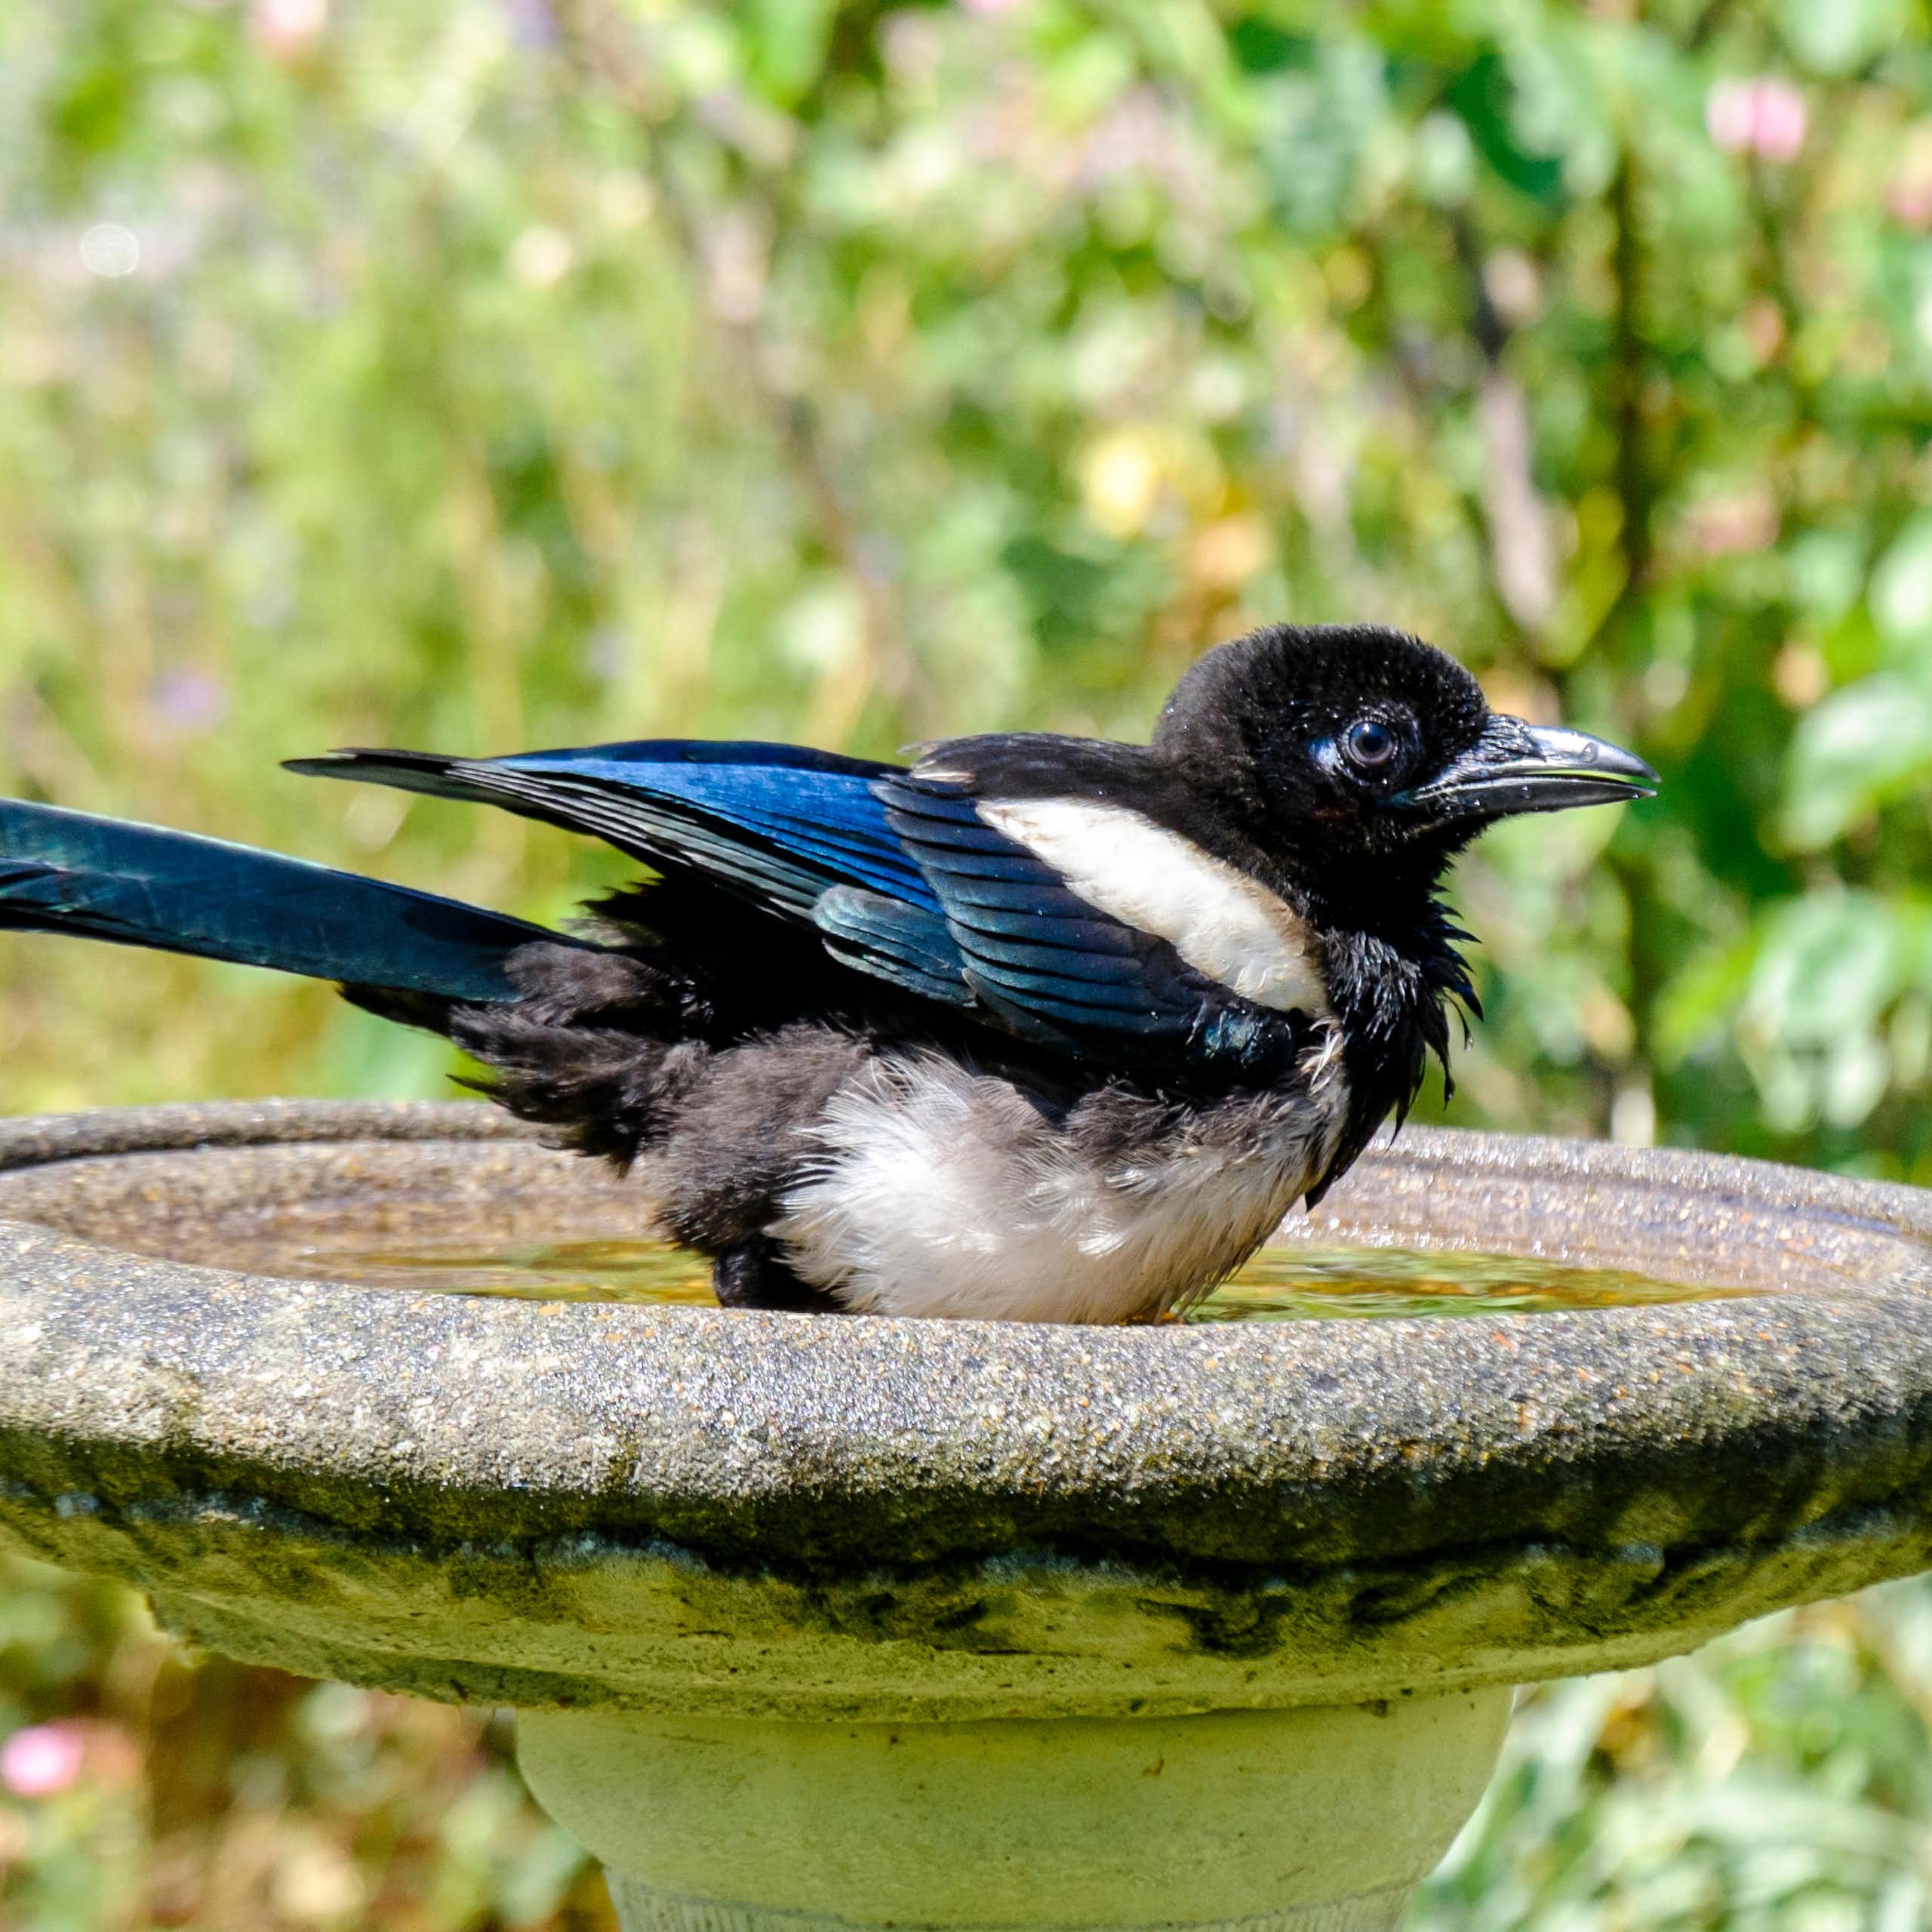 A magpie in a bird bath.